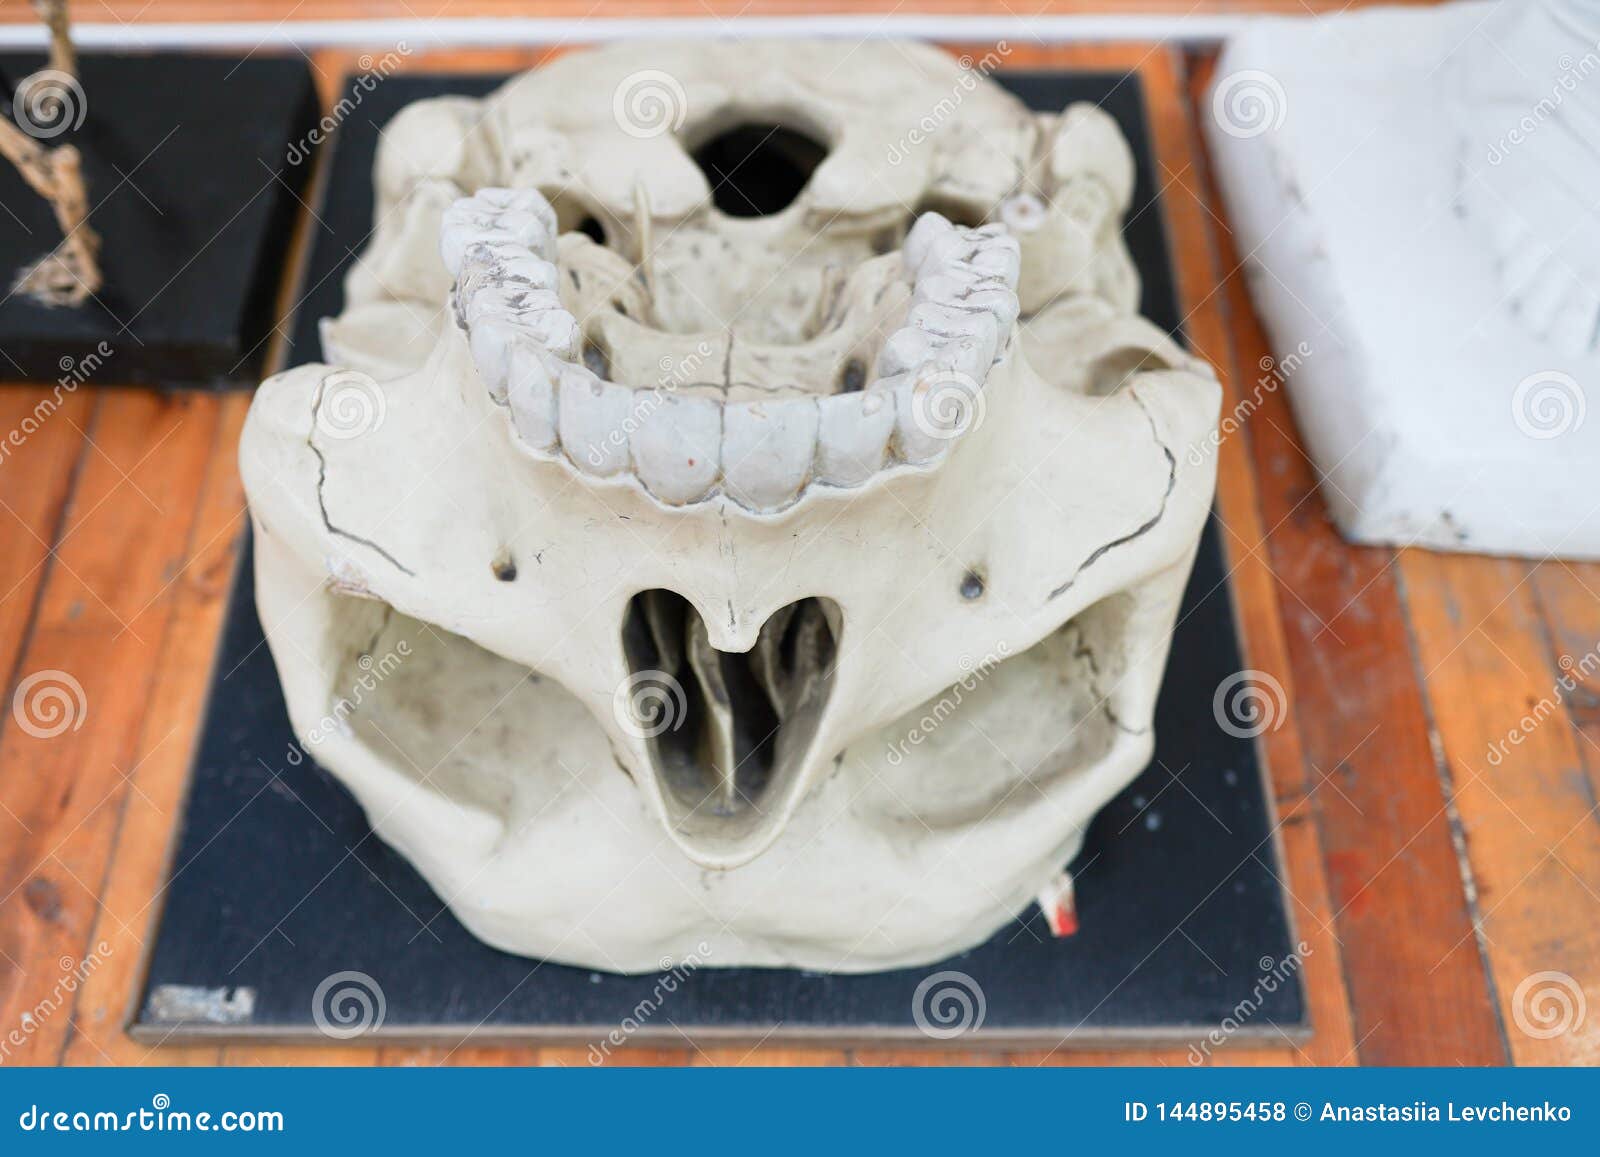 Modelo médico de um crânio humano usado nas faculdades e nas universidades ensinando a ciência anatômica